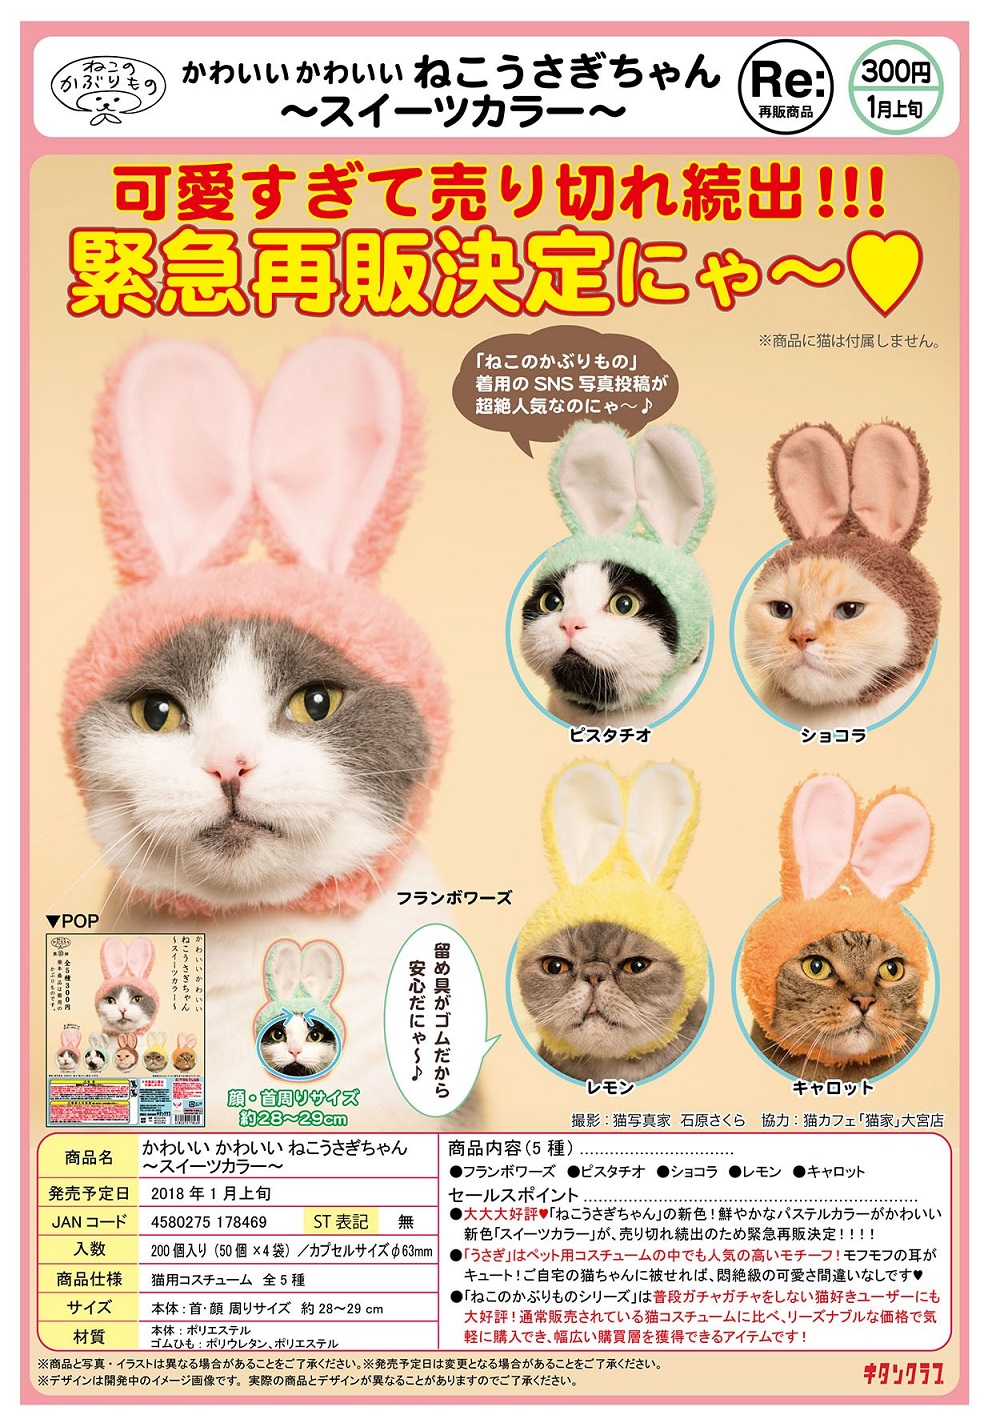 再版 300日元扭蛋 可爱猫猫头巾 兔耳Ver. 甜美色 全5种 178469ZB